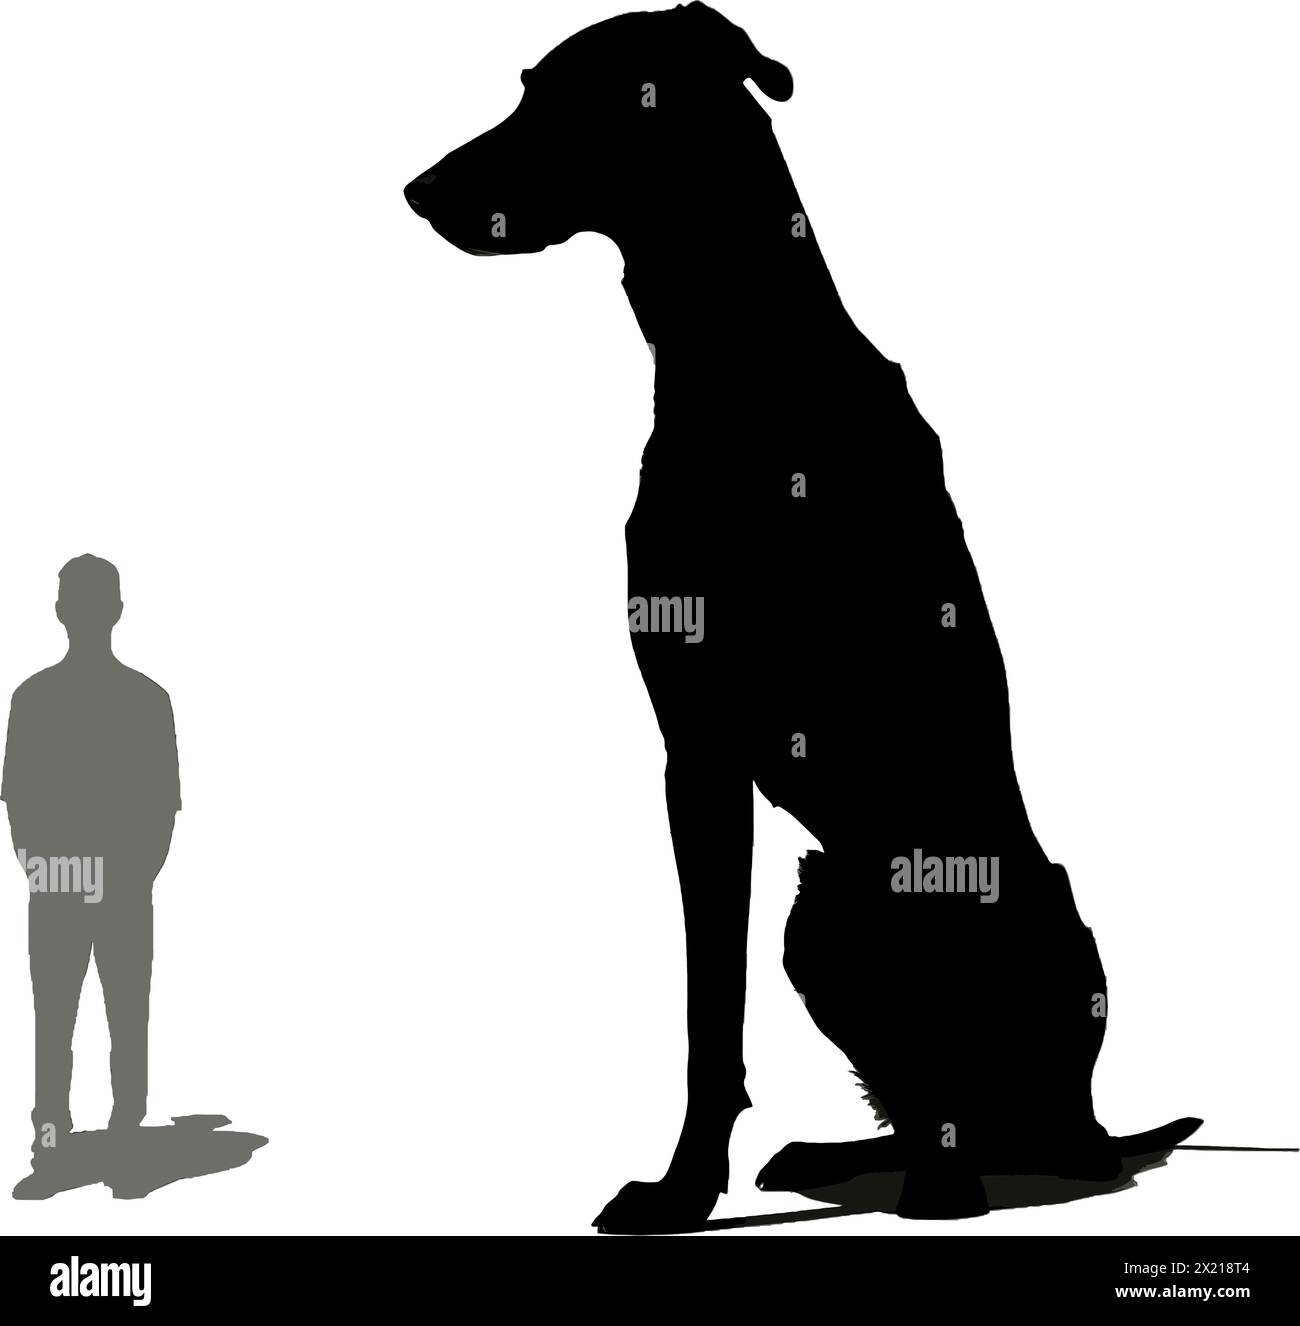 Illustration vectorielle d'un grand chien et d'un petit homme en silhouette noire sur un fond blanc propre, capturant des formes gracieuses. Illustration de Vecteur